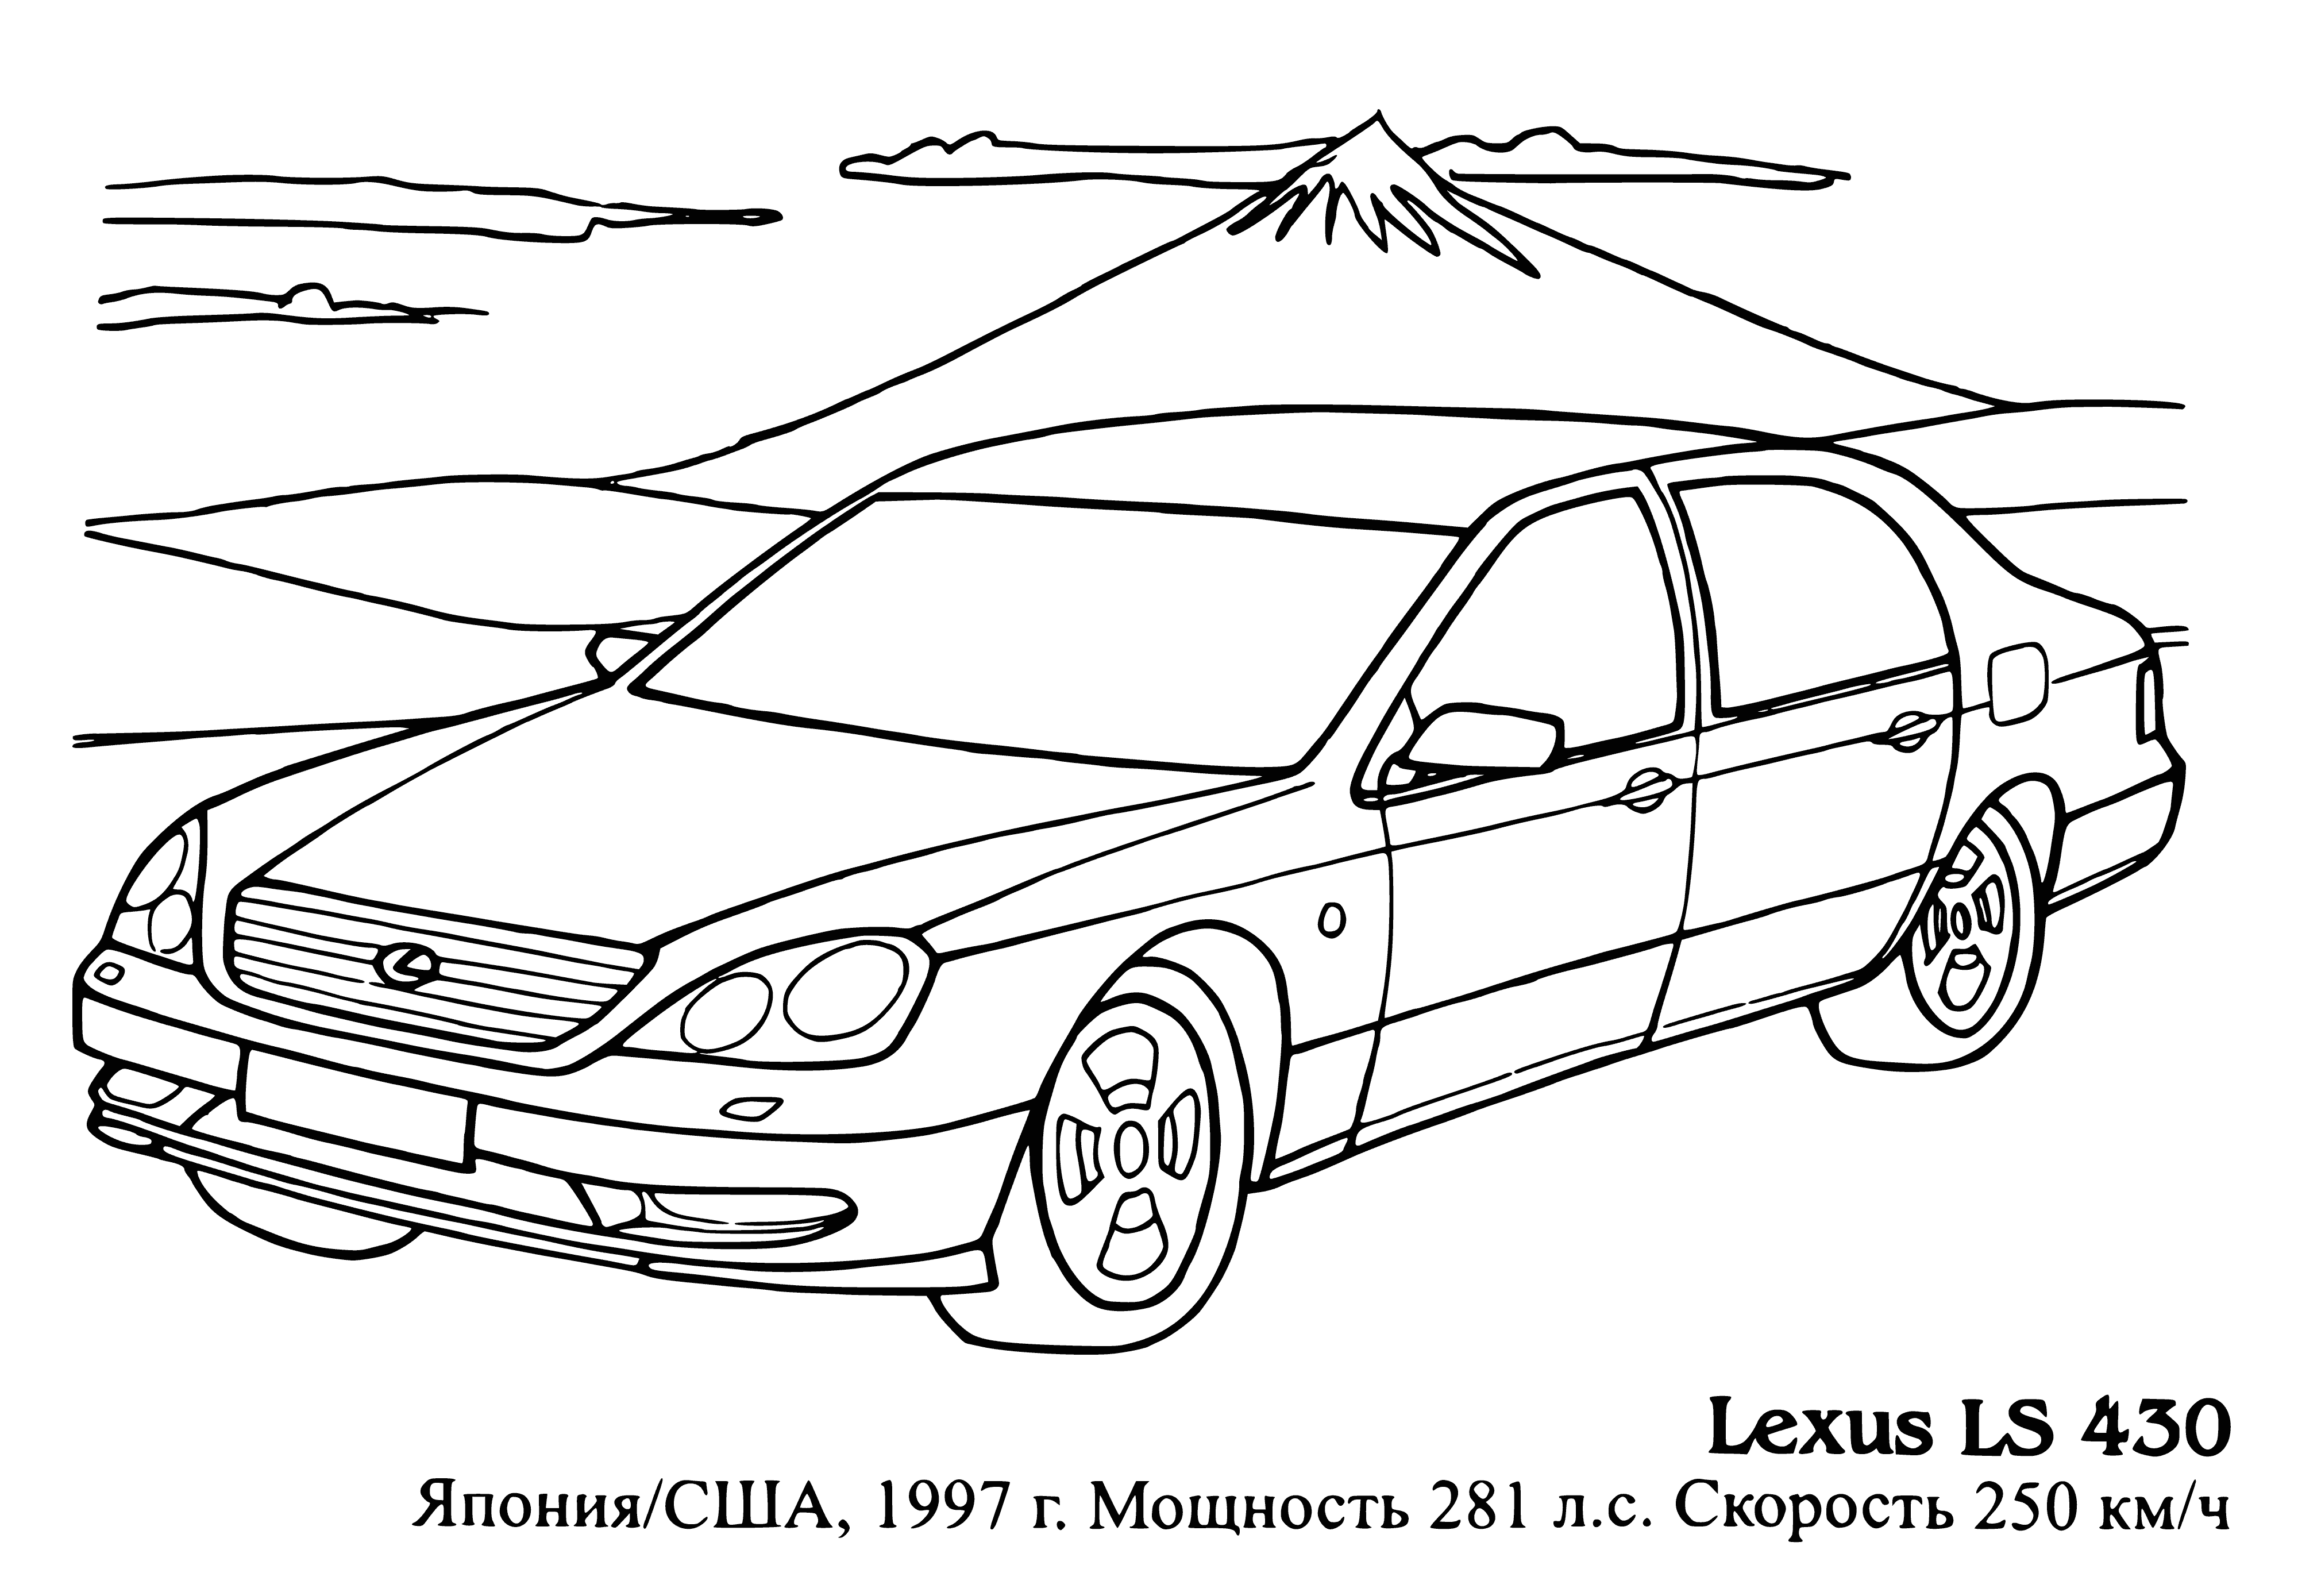 Lexus LS 430 boyama sayfası